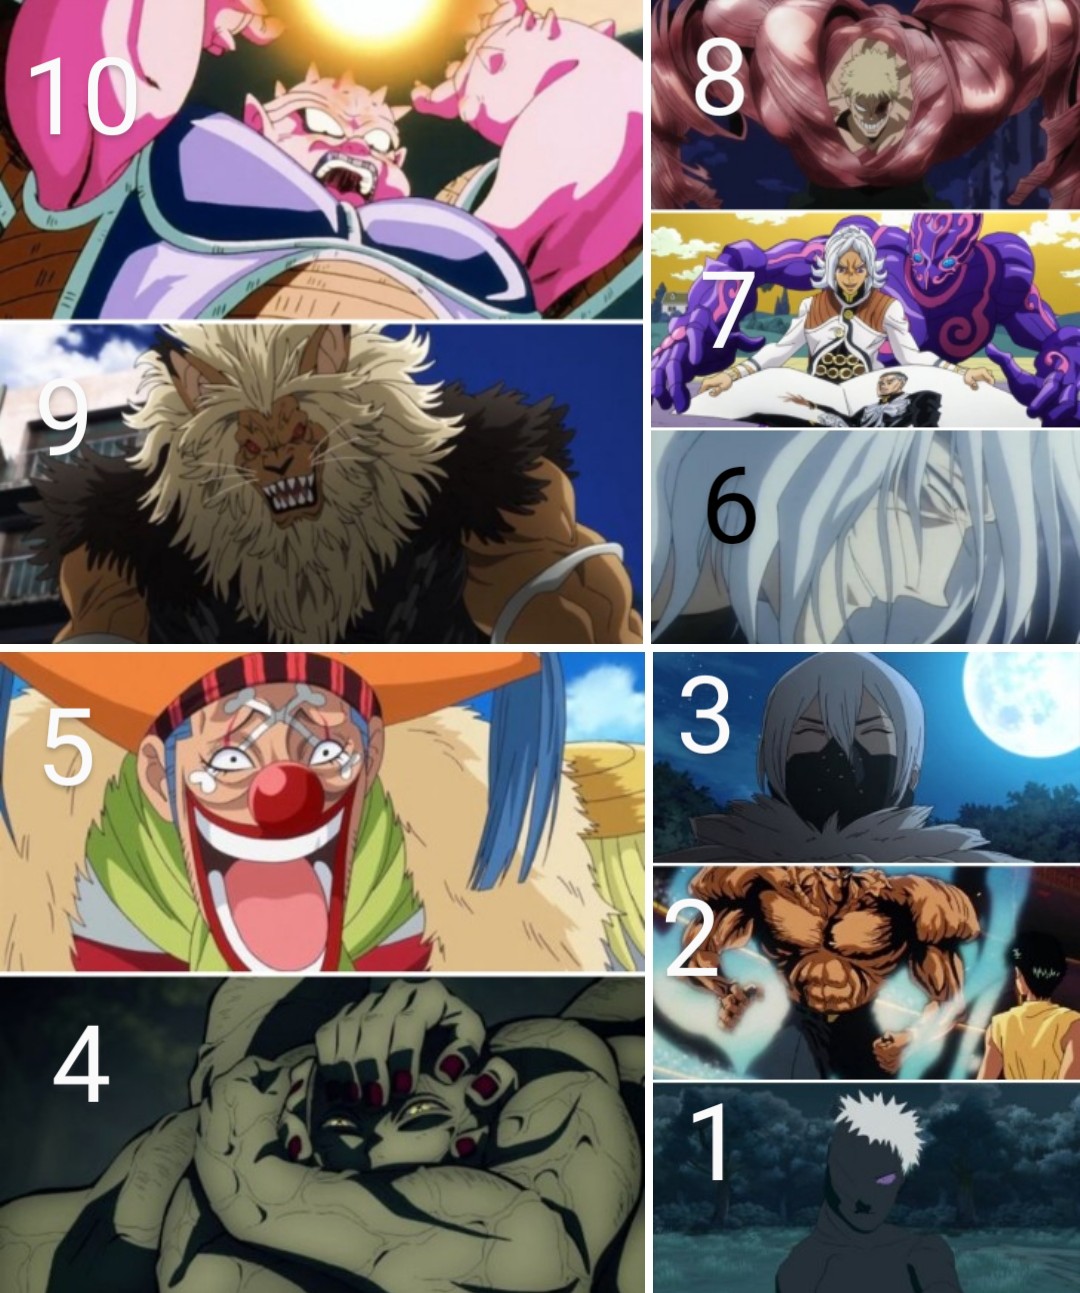 Top 10 My Hero Academia Characters by HeroCollector16 on DeviantArt